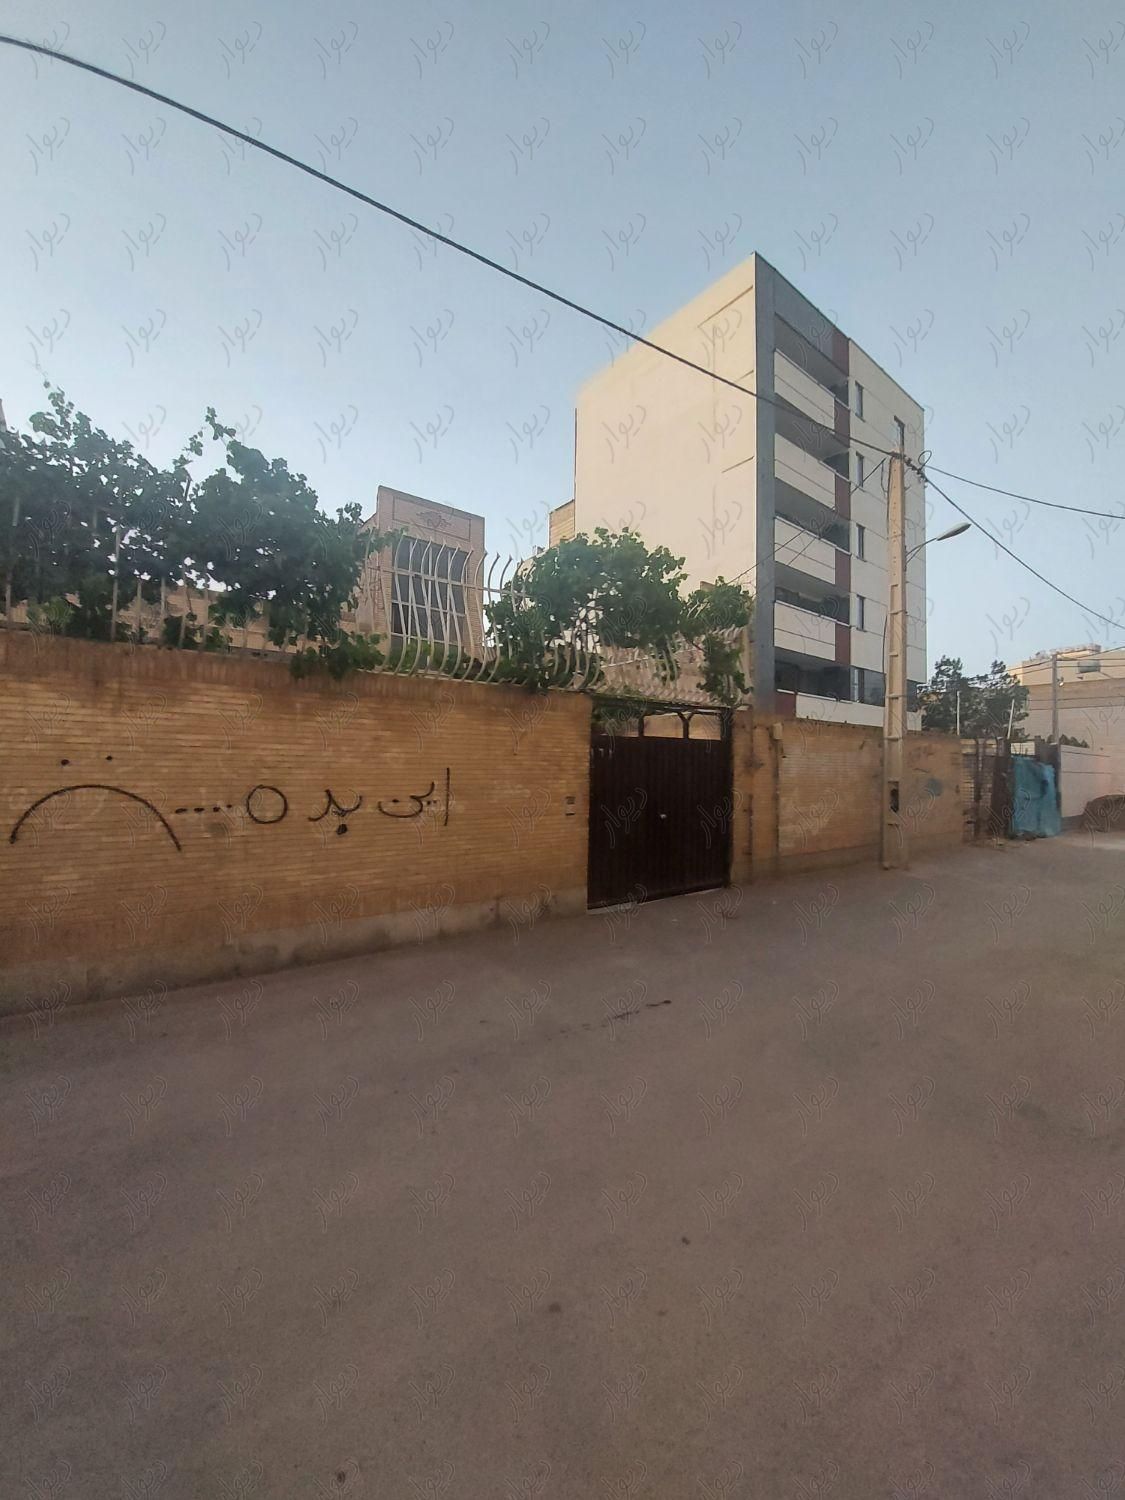 ویلایی کلنگی ۱۹۰ متری / فلاطوری|فروش خانه و ویلا|اصفهان, محمد طاهر|دیوار